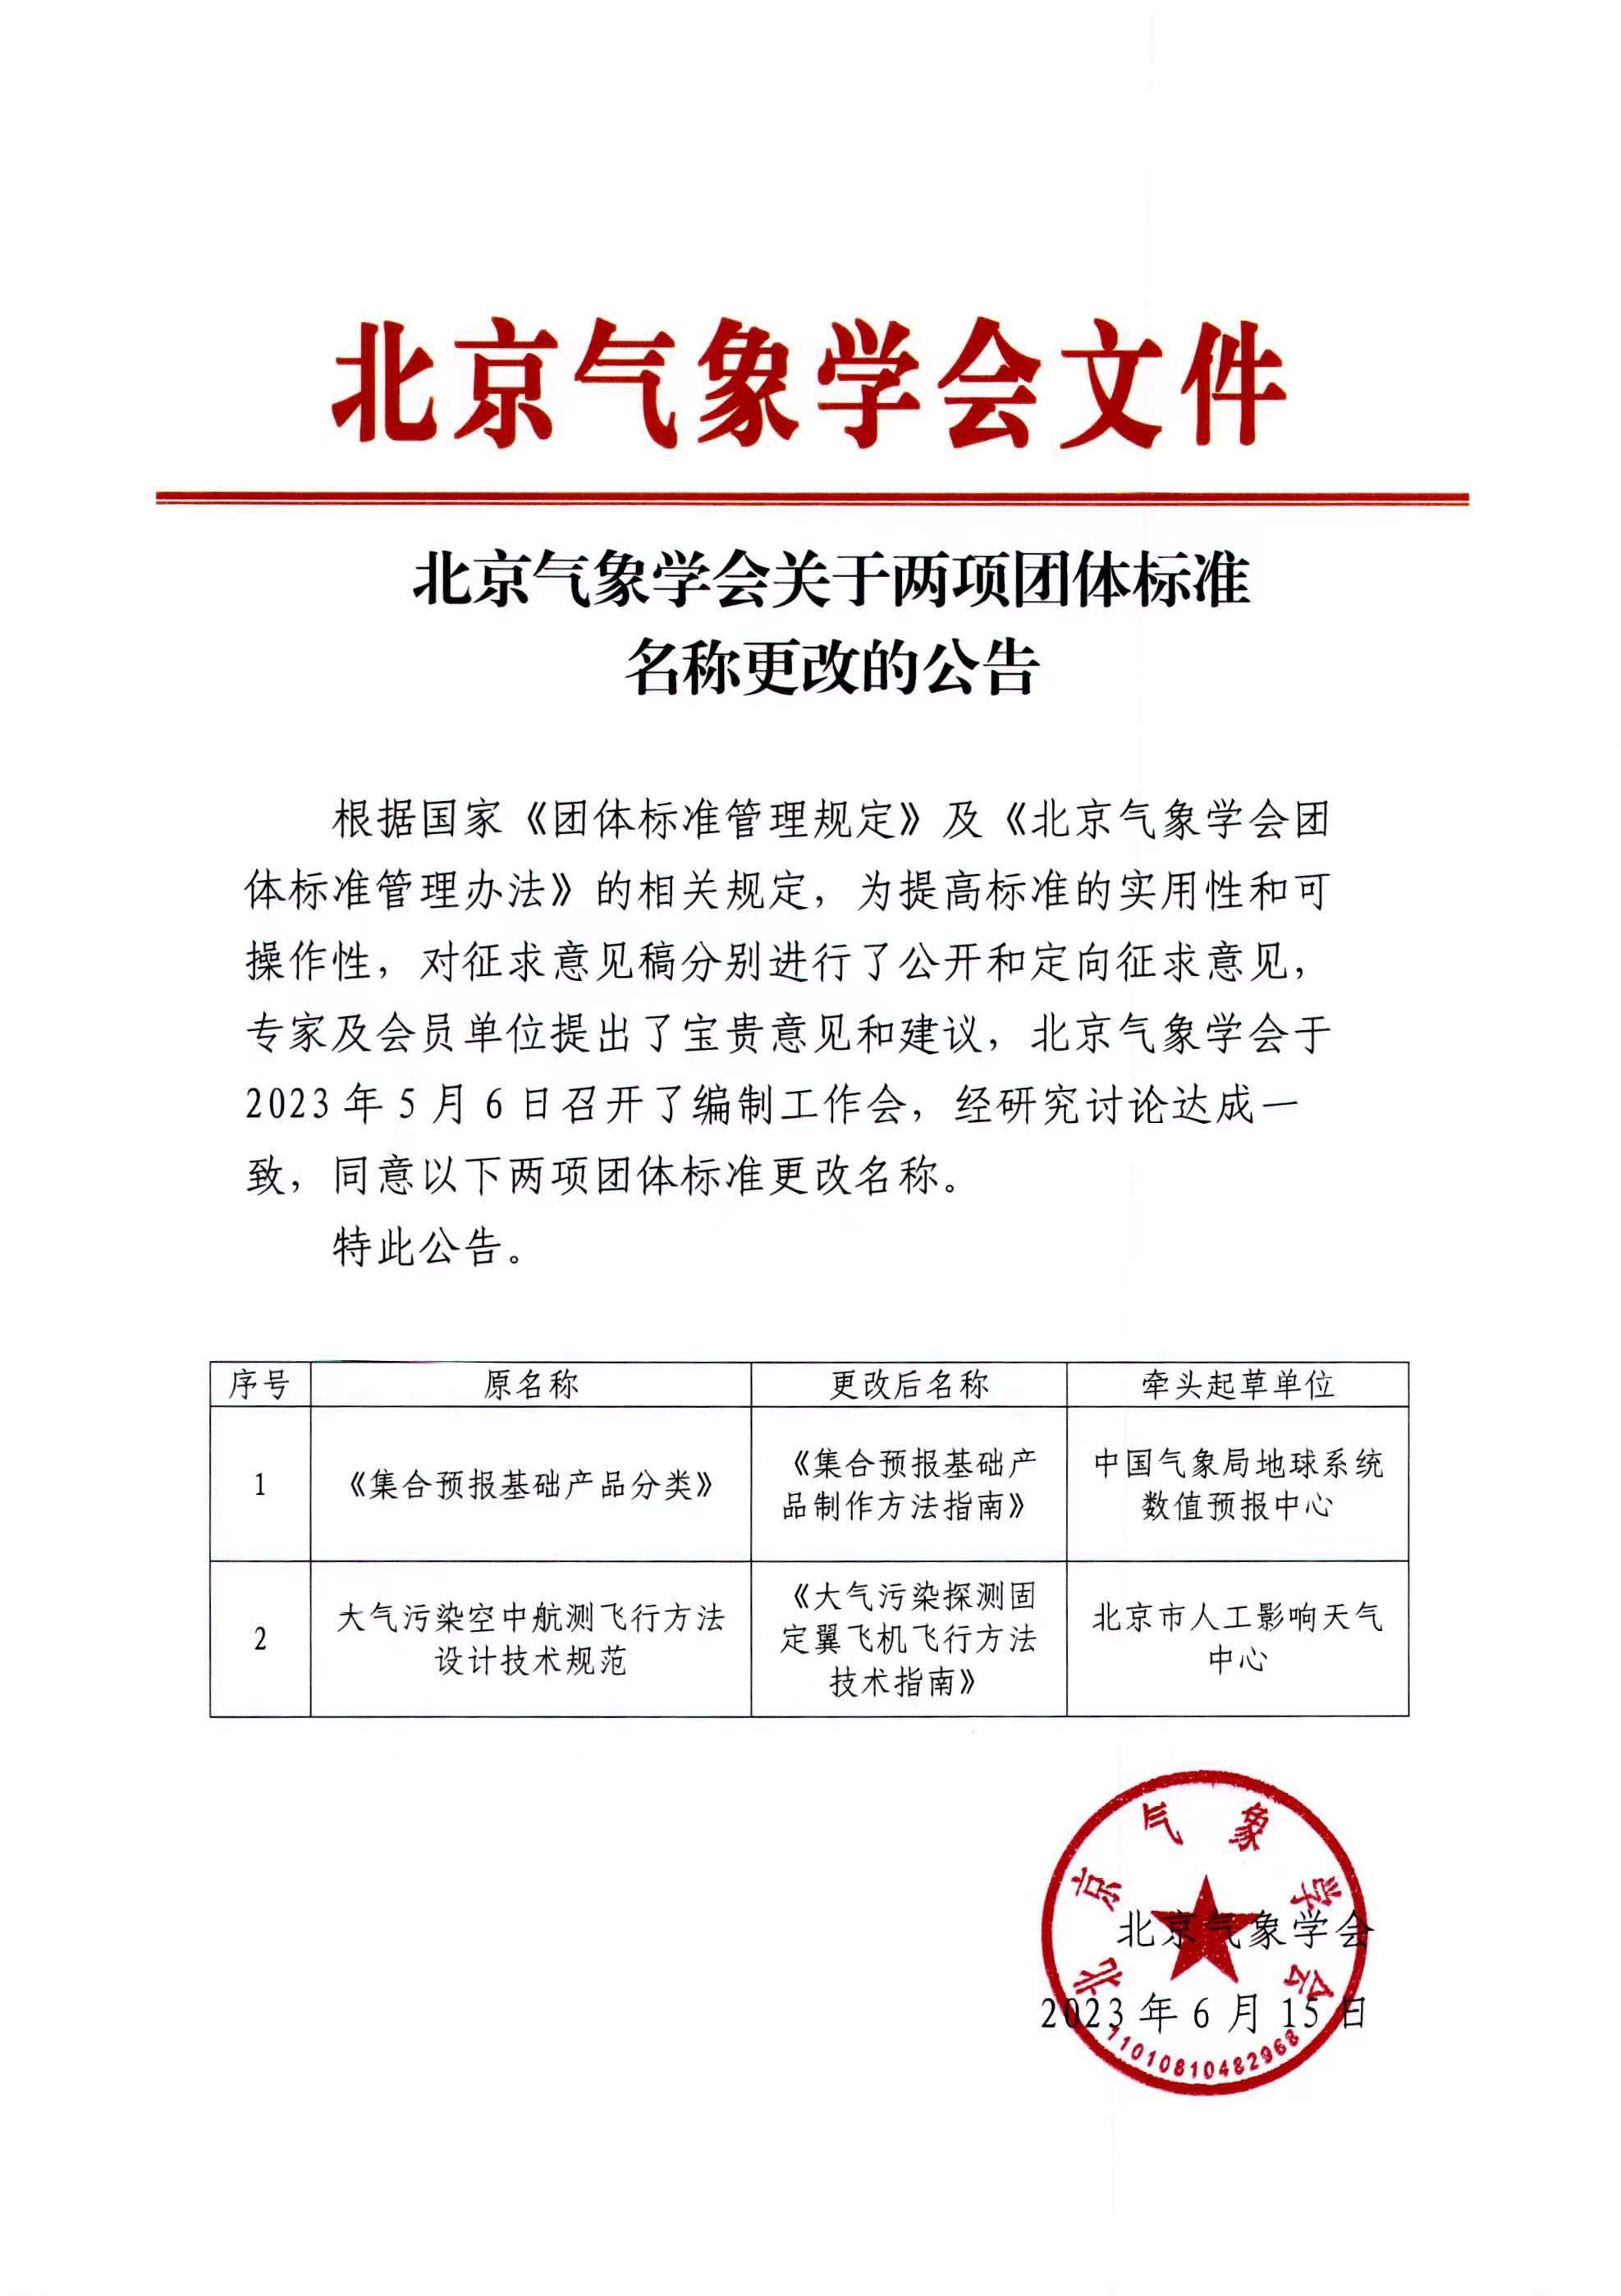 20230615-团标更名_北京气象学会.jpg